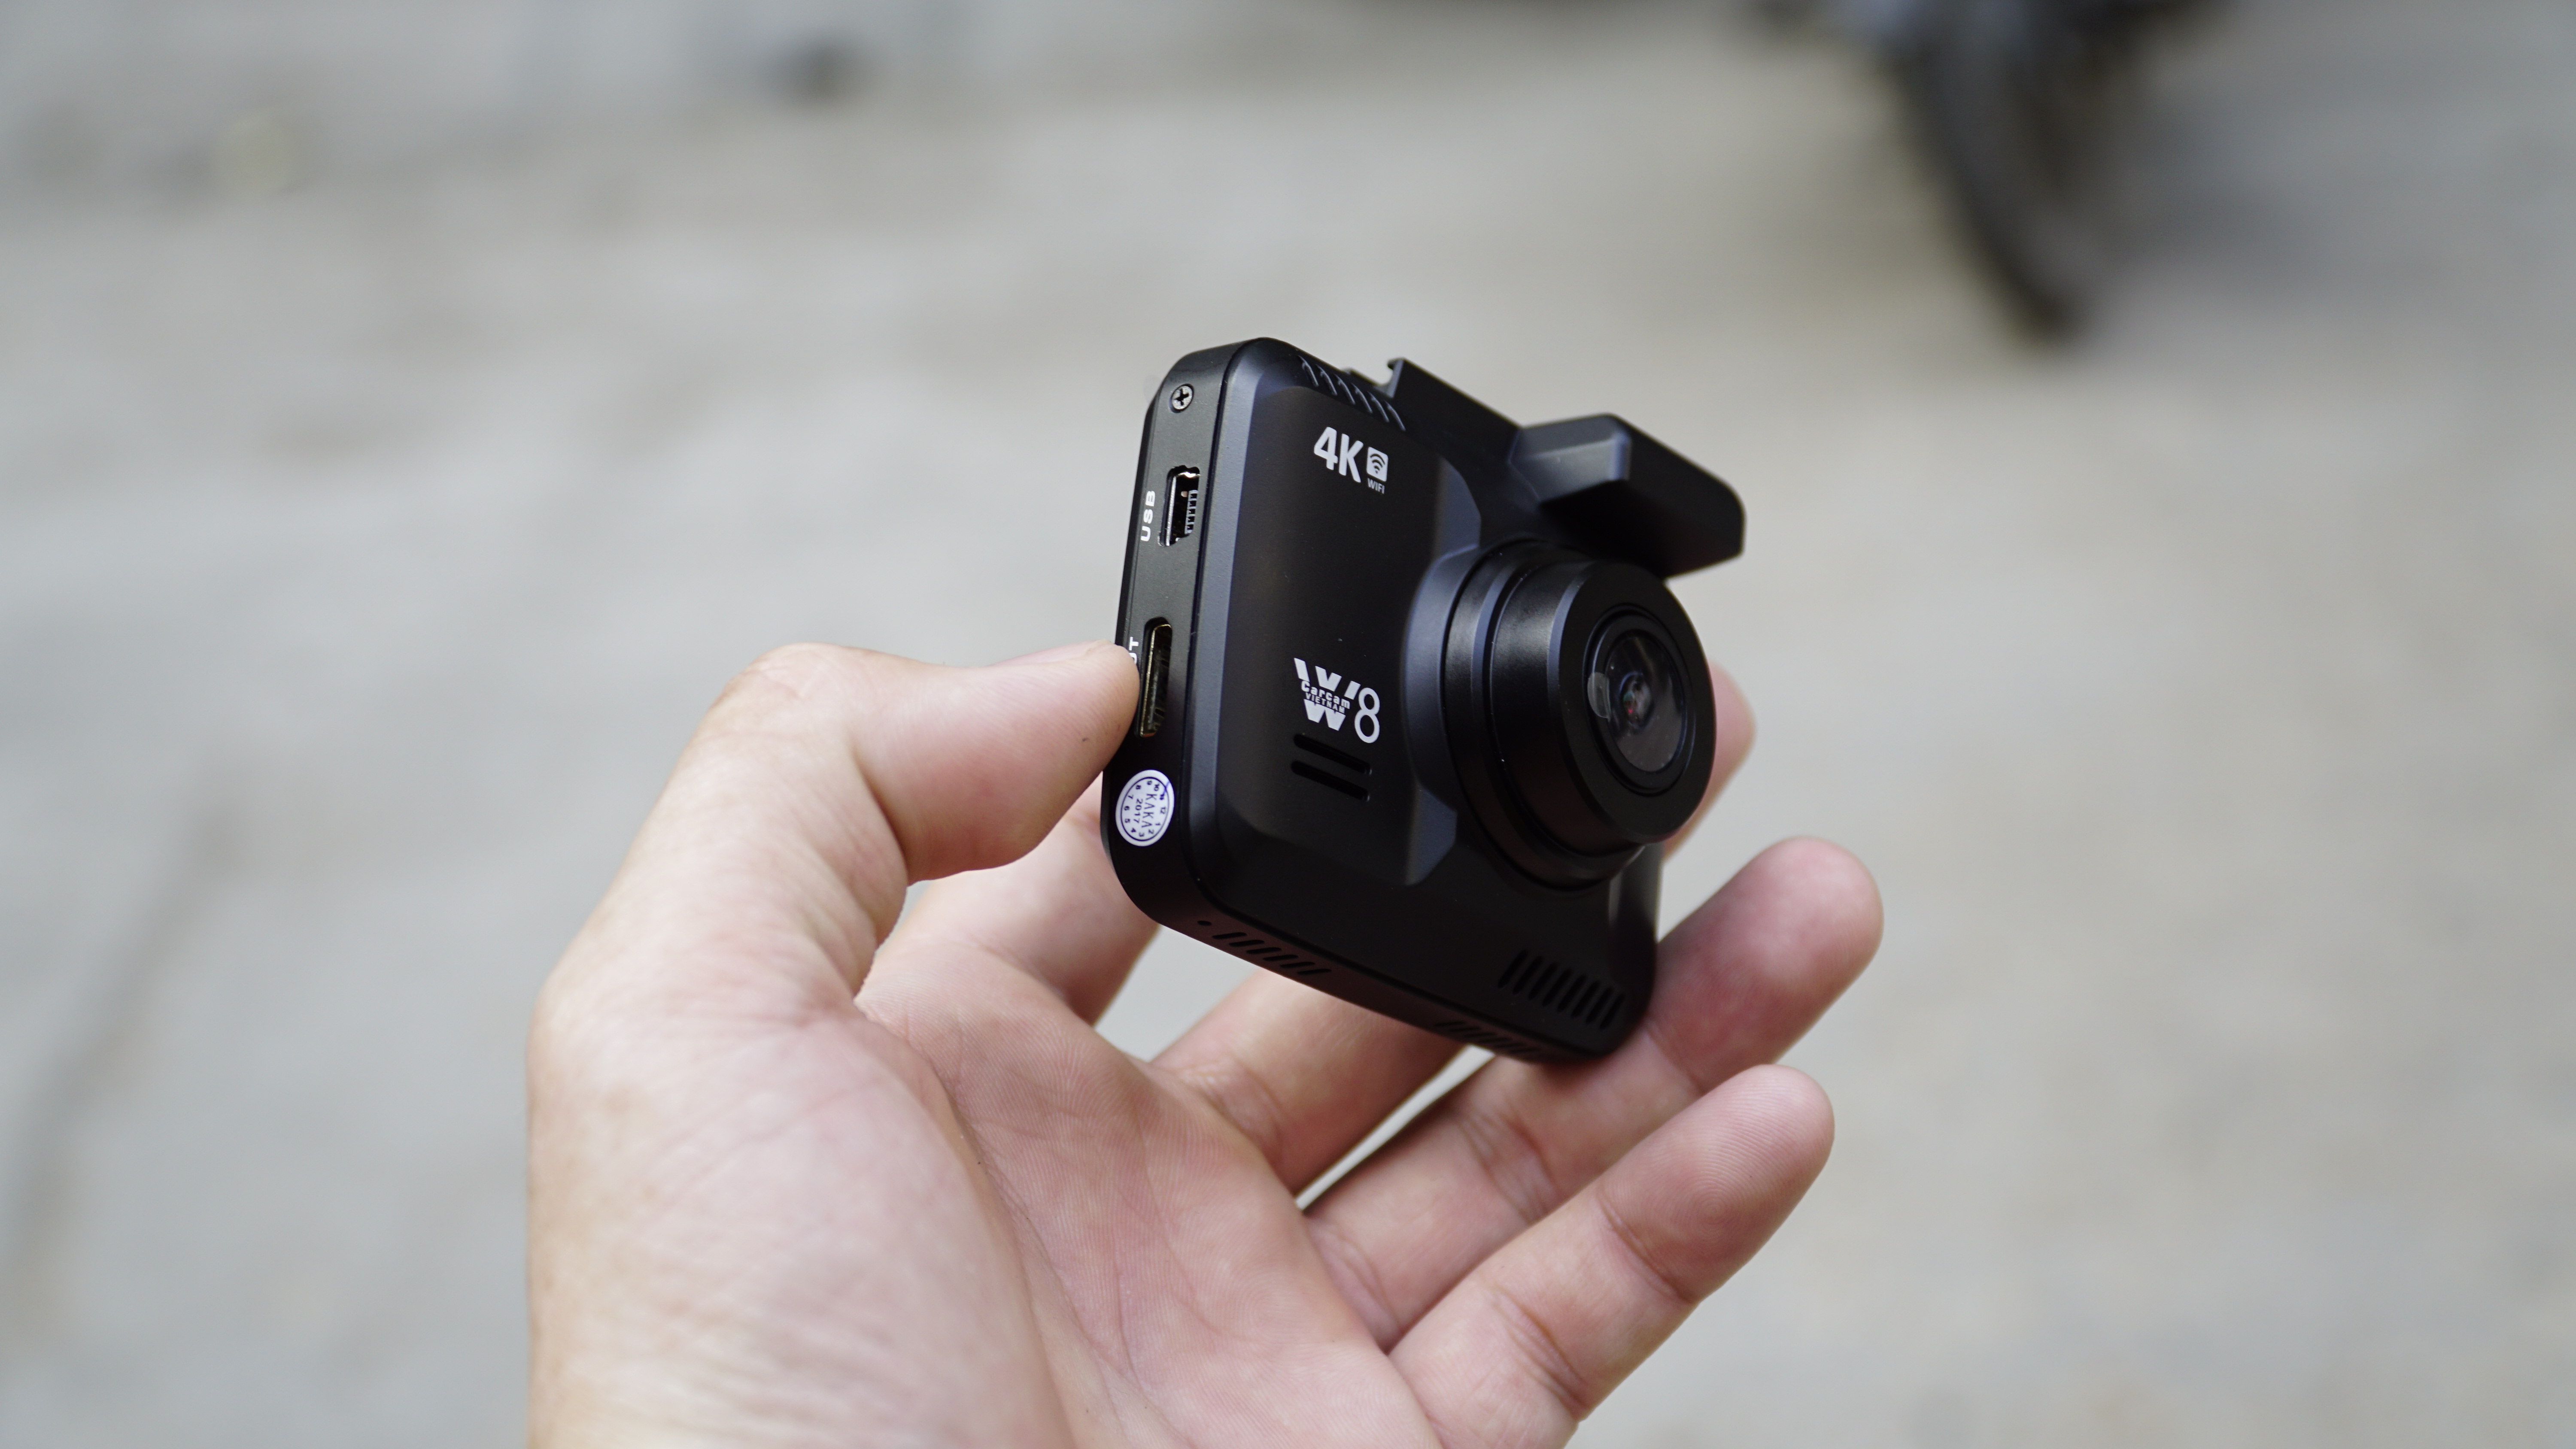 camera hành trình w8 có kích thước nhỏ gọn